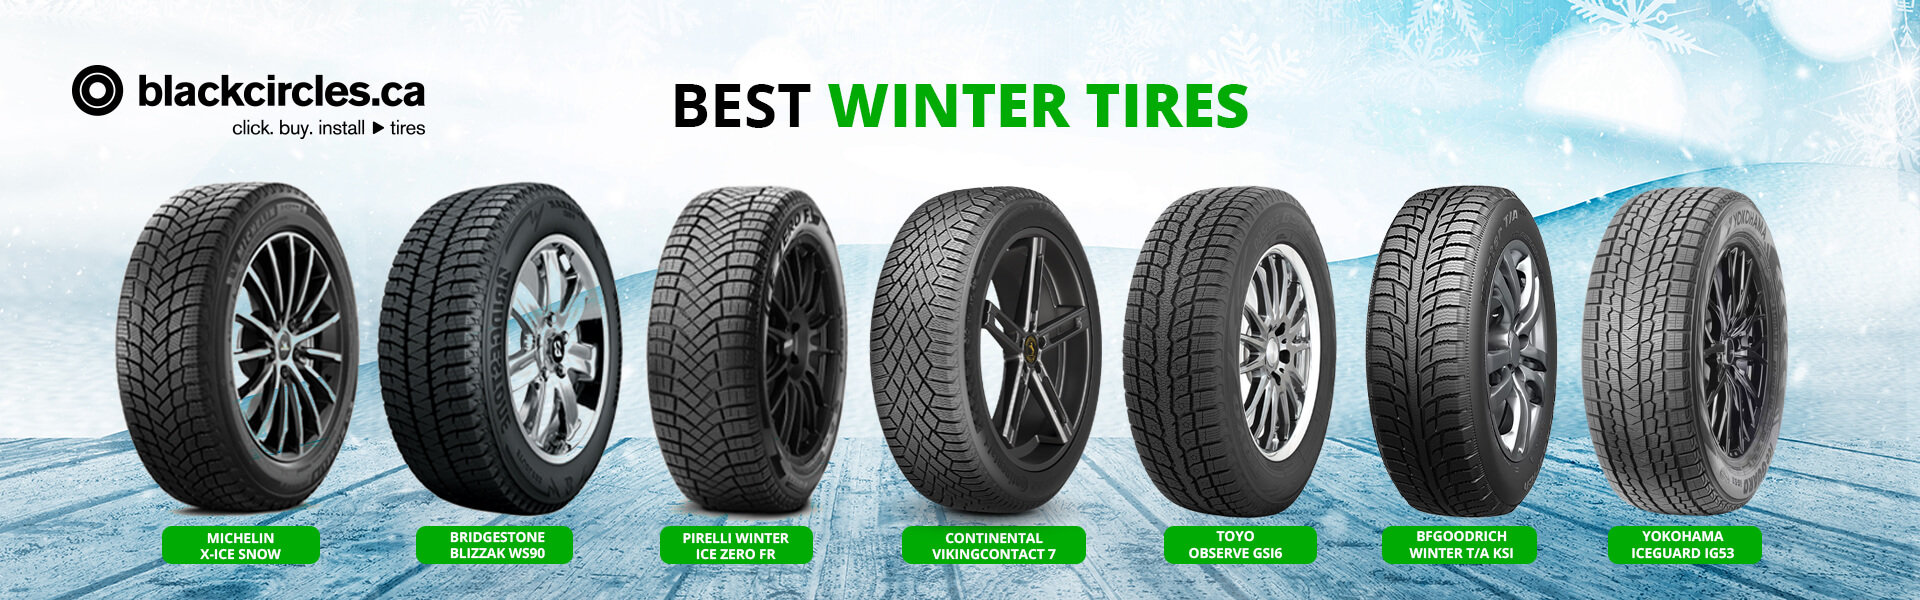 Best Winter tires